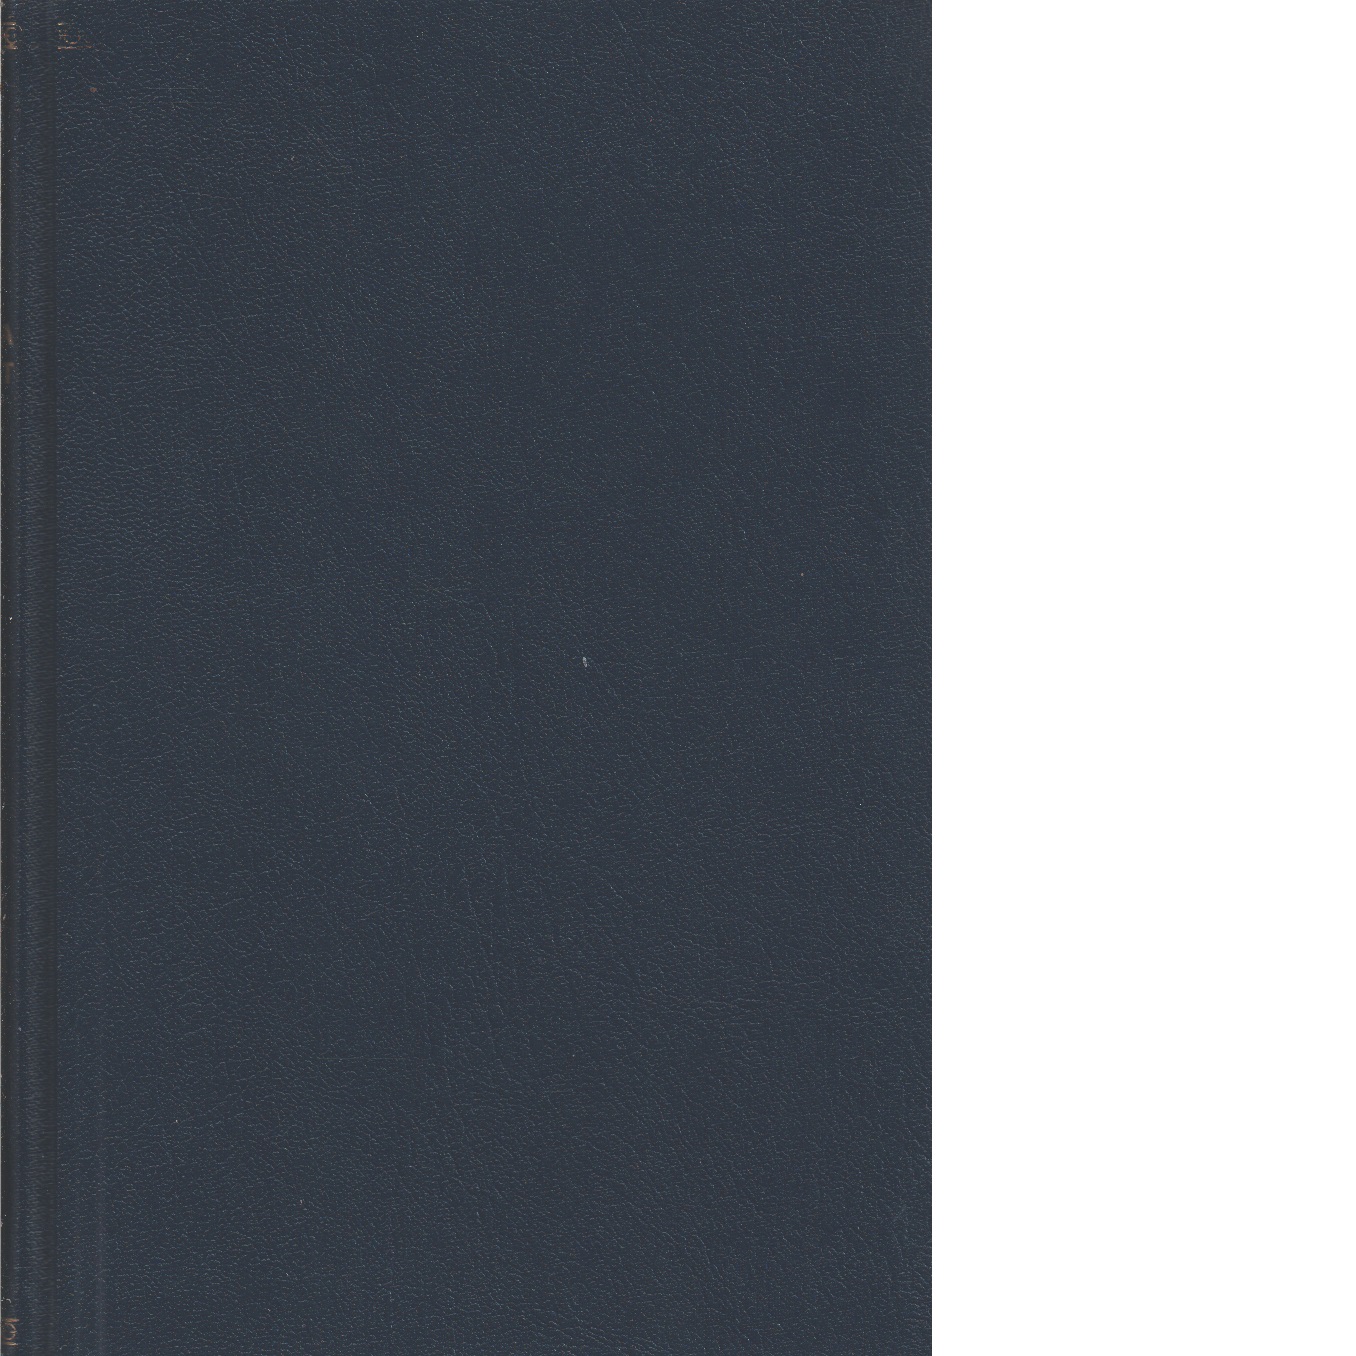 Karolinska förbundets årsbok    1970-71-72-73 - Karolinska förbundet